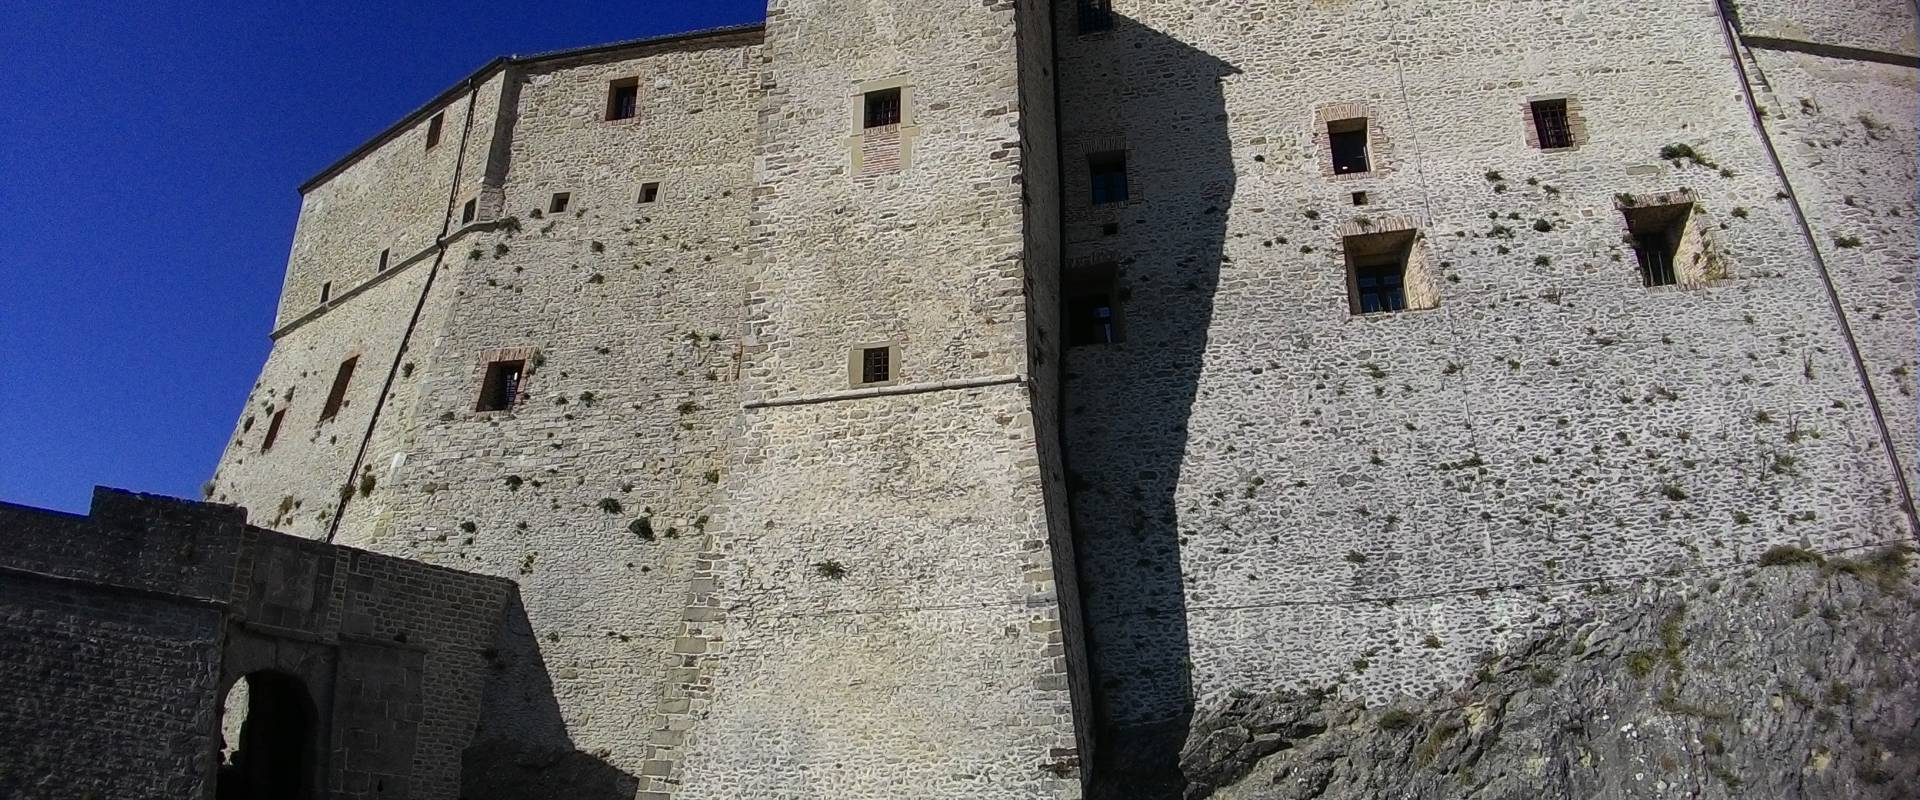 Rocca di San Leo, mura interne foto di Fringio